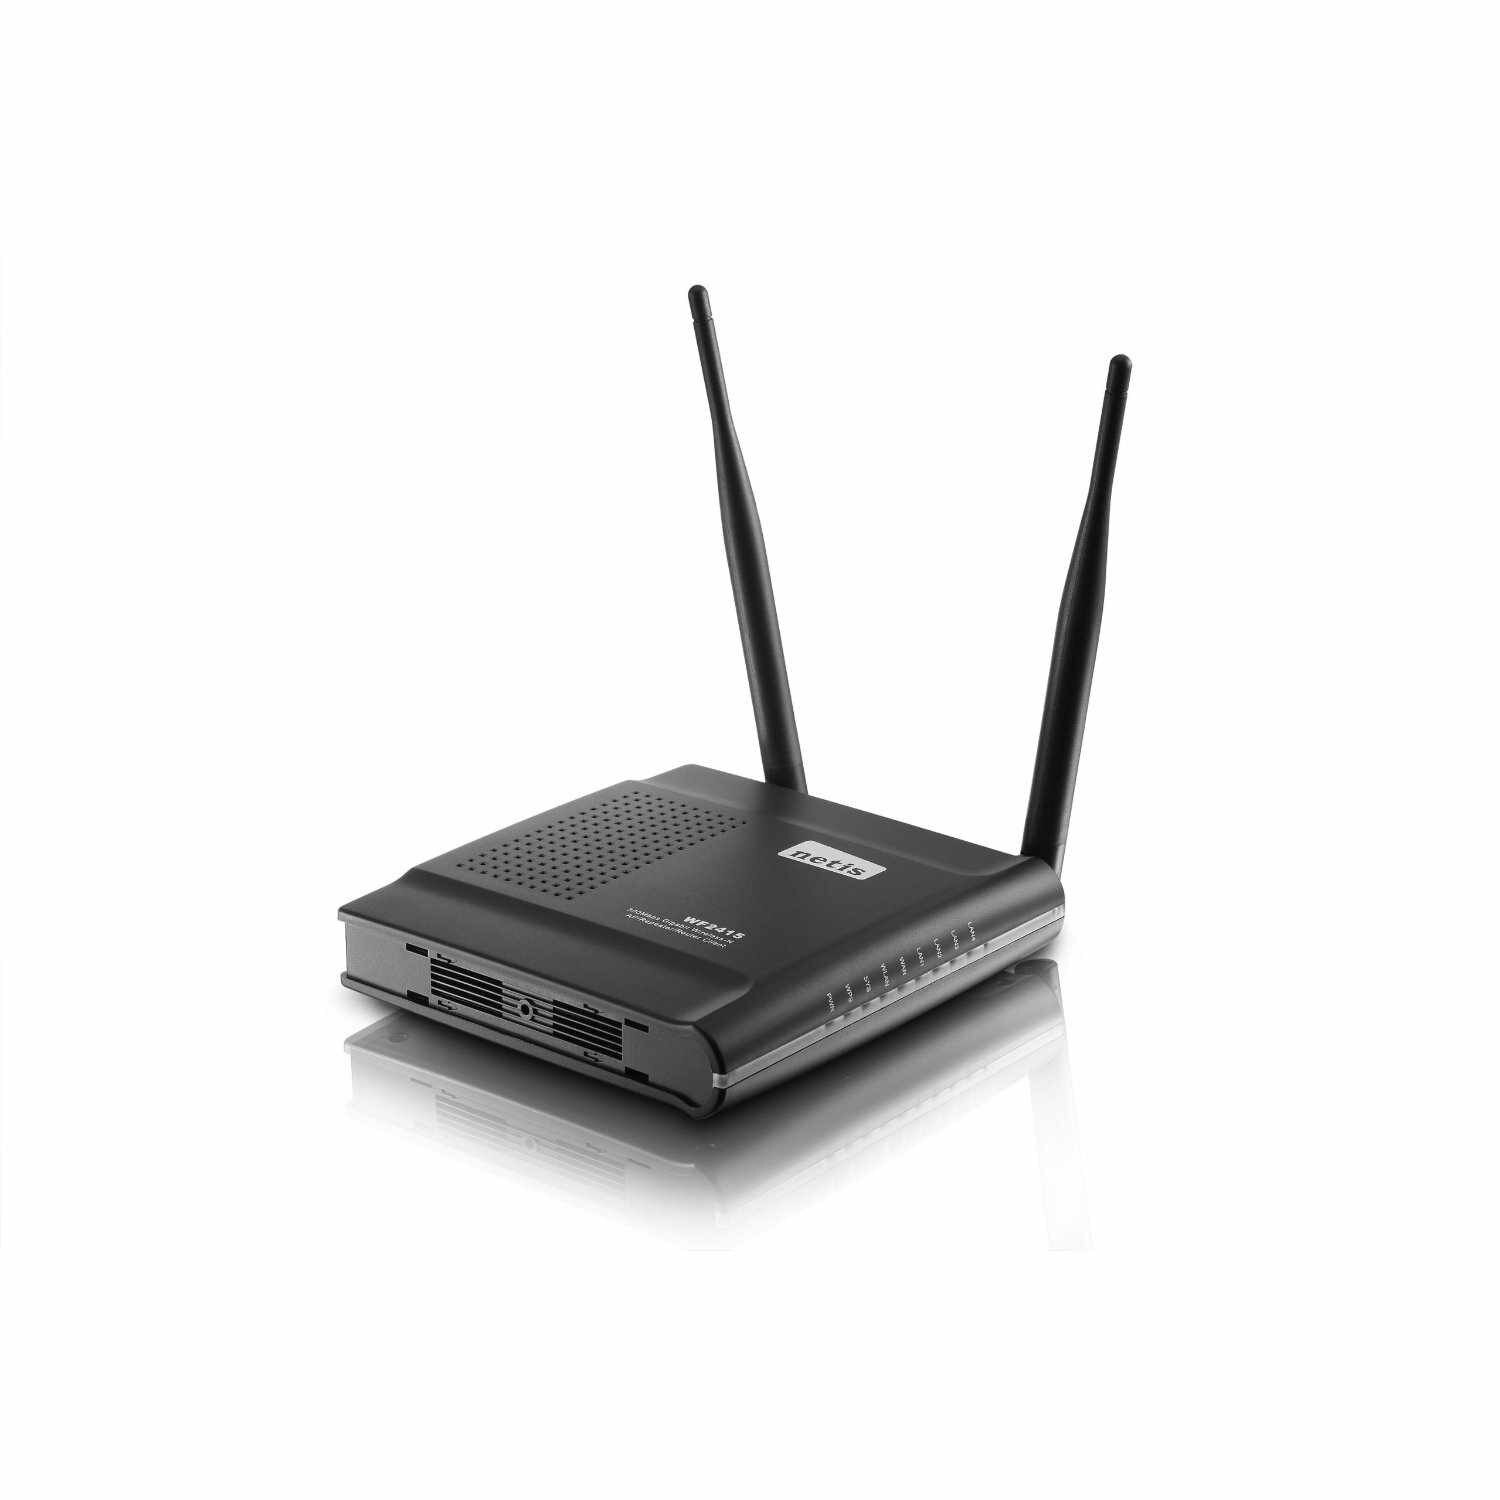 Routeur Wifi n, 300 Mbit/s, 3 antennes, et switch Ethernet RJ45 10/100,  Stonet WF2409E